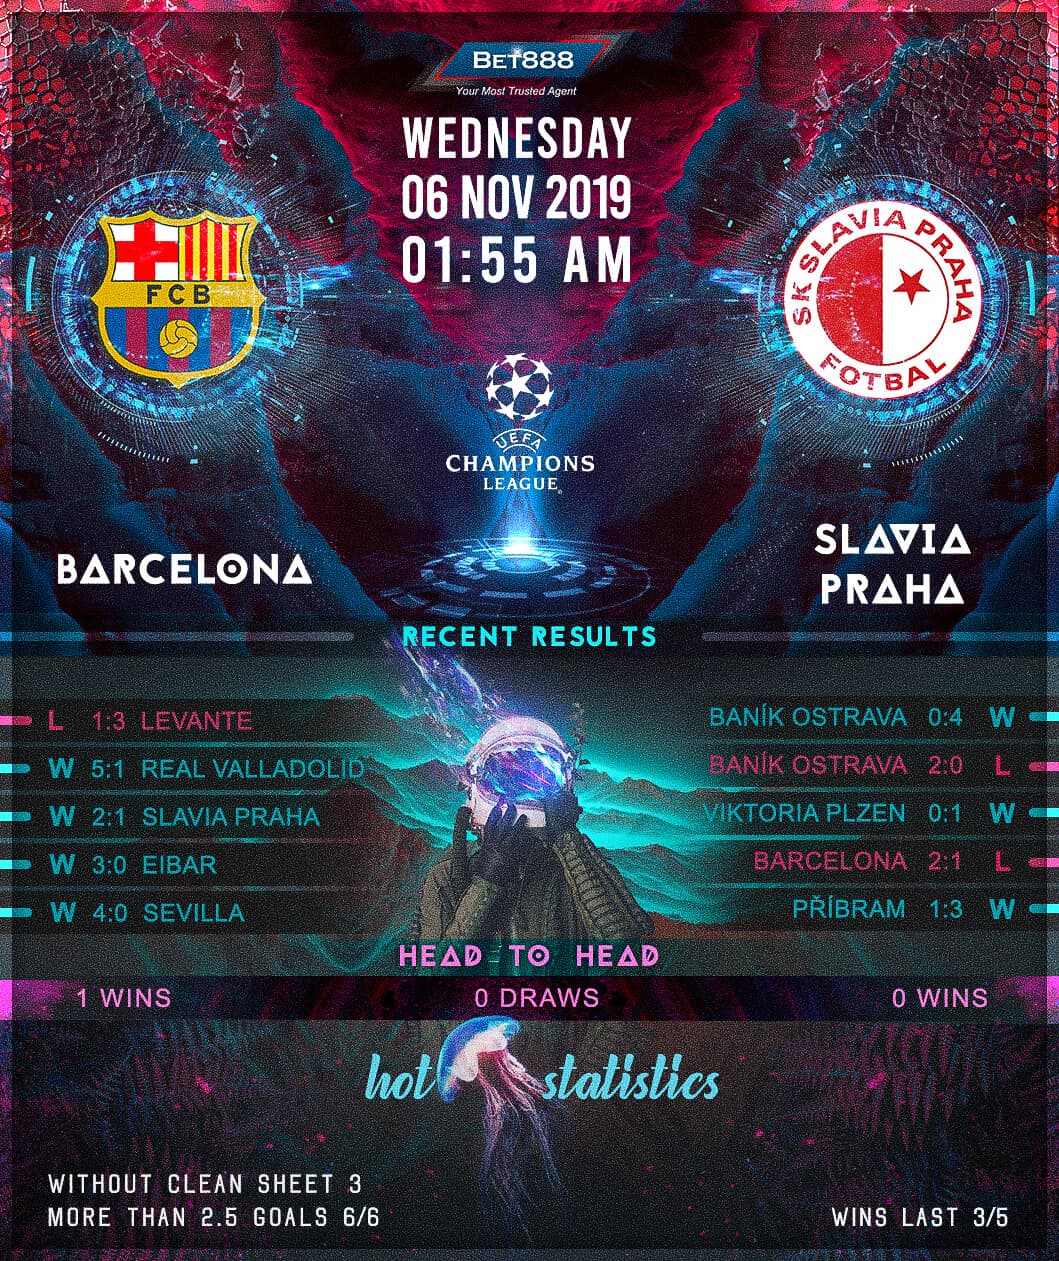 Barcelona vs Slavia Praha﻿ 06/11/19